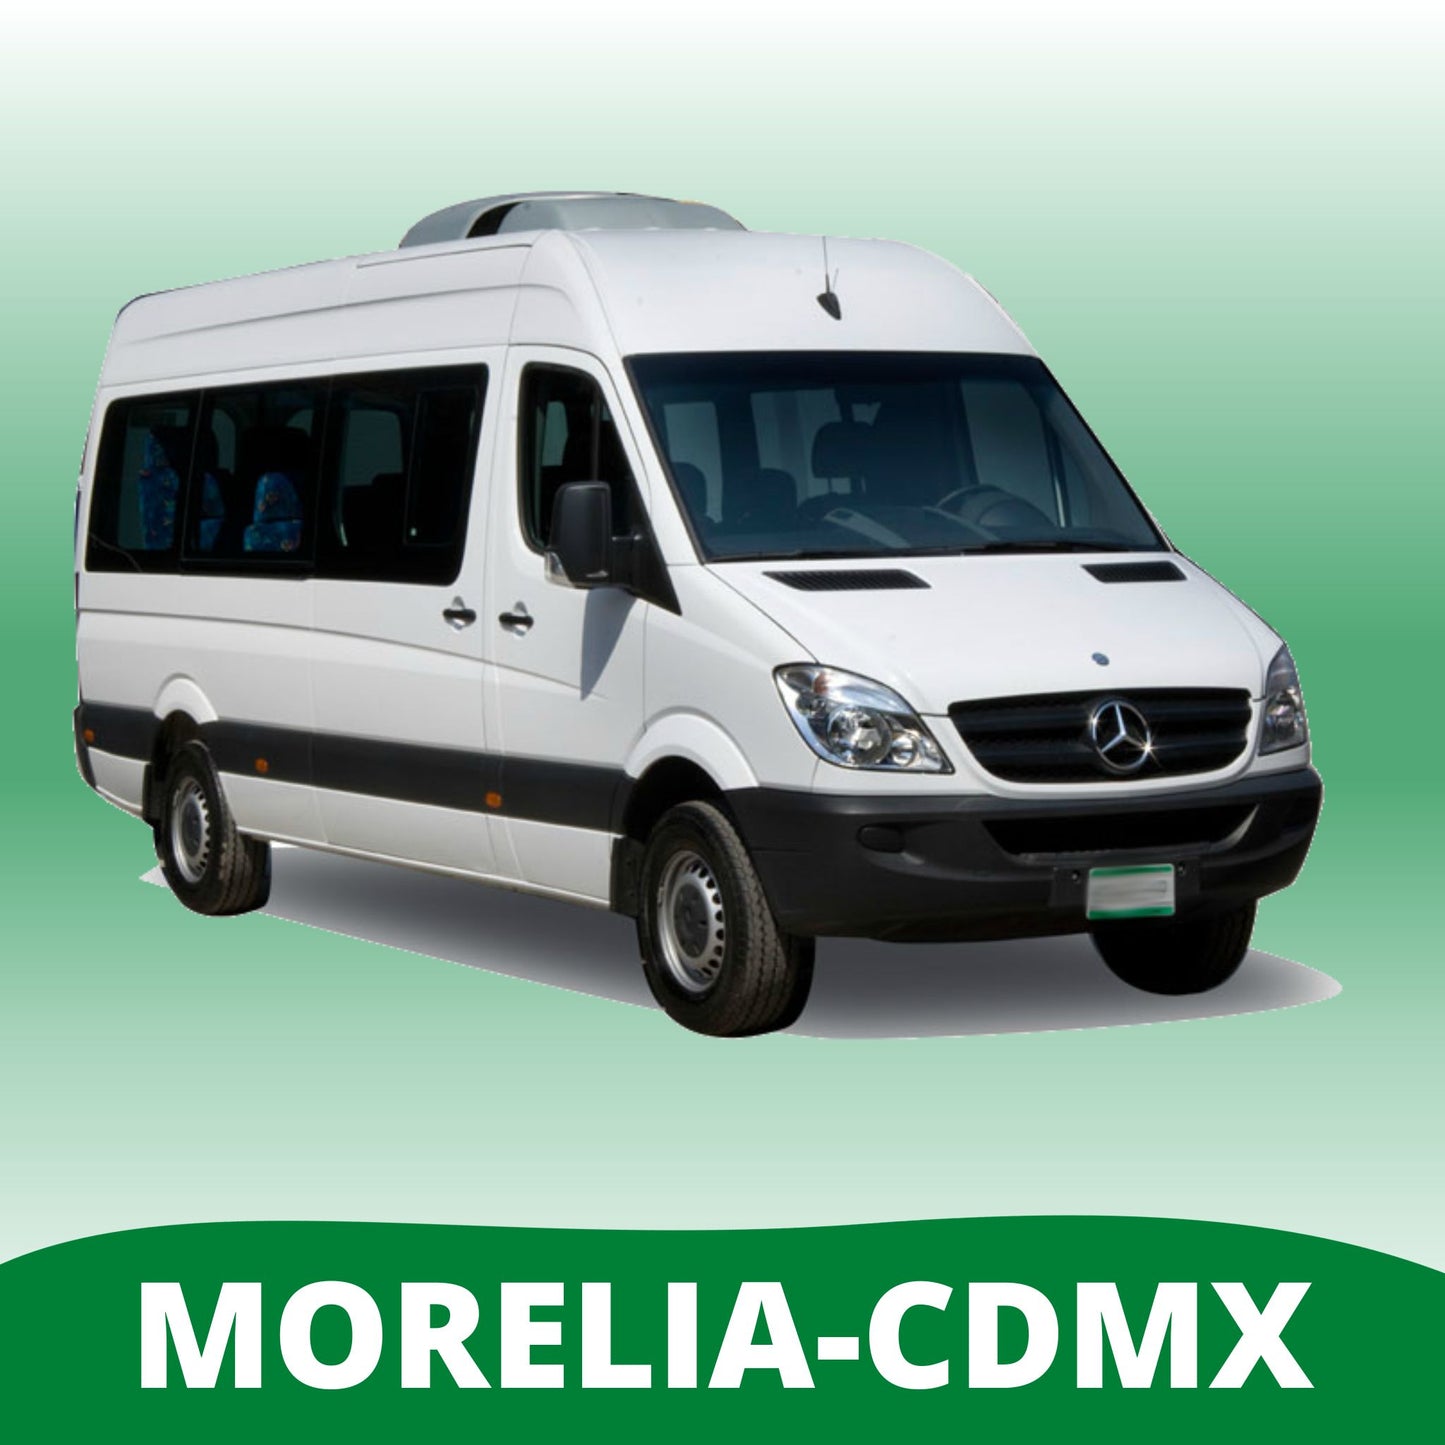 Chárter Morelia - CDMX